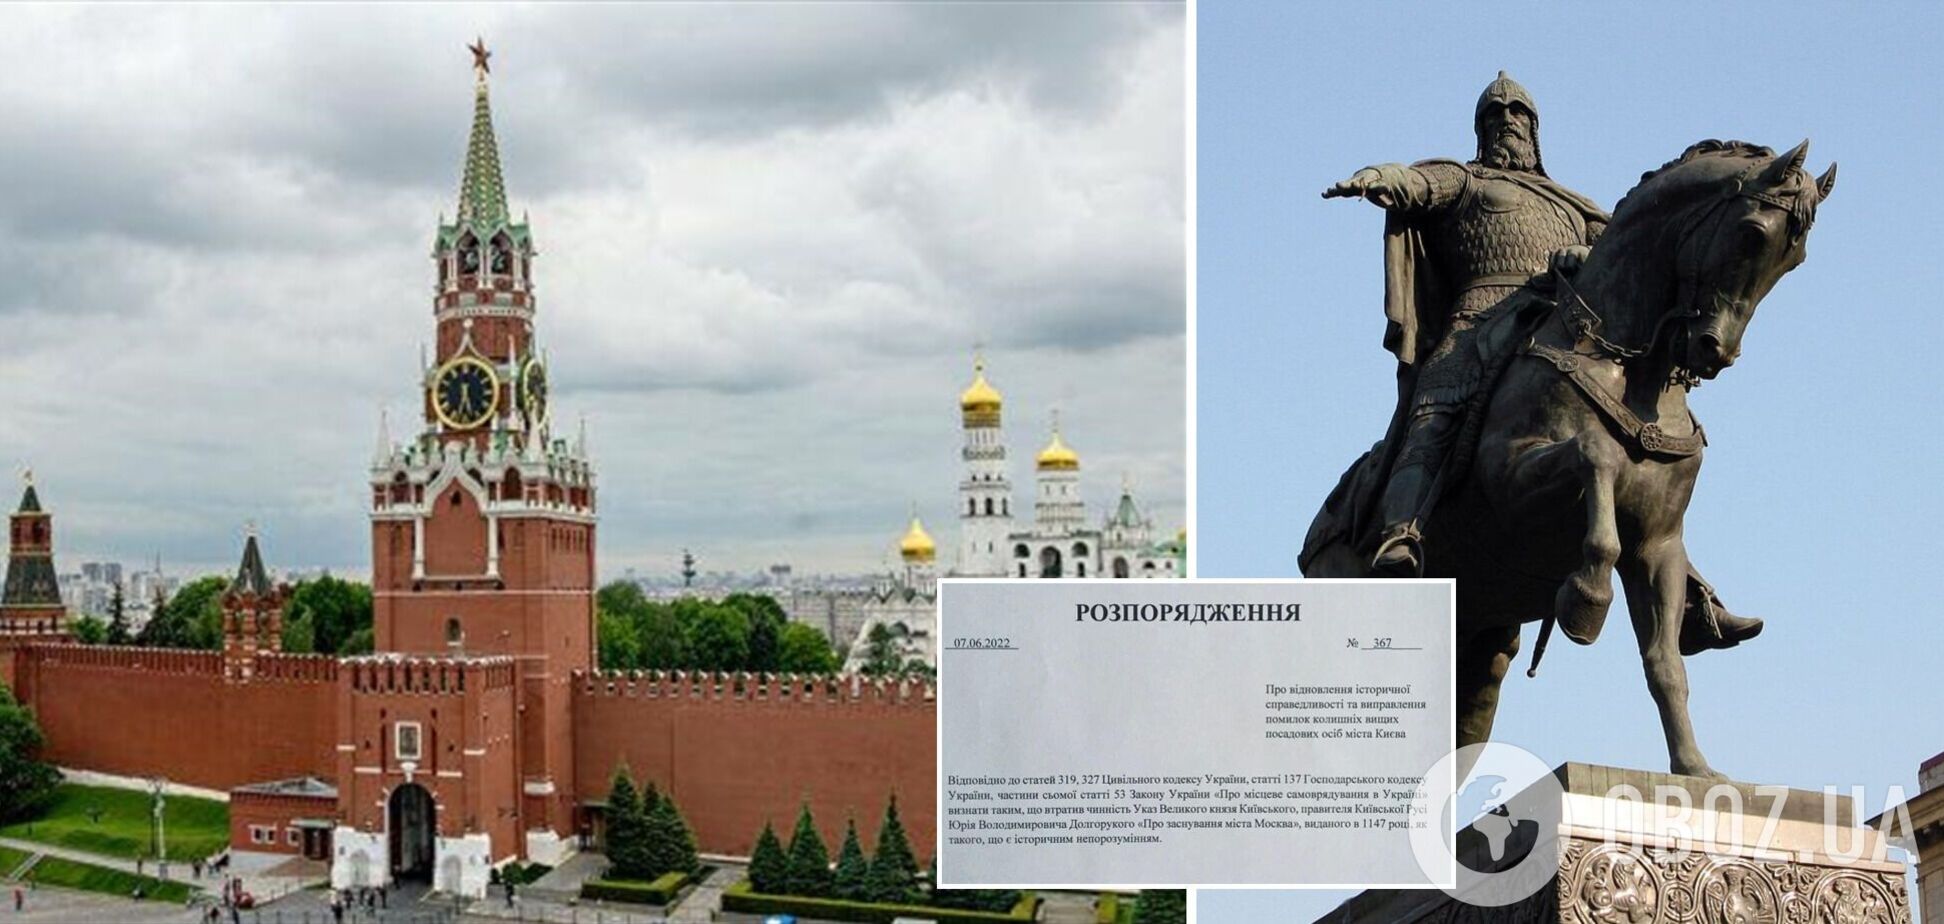 'Історичне непорозуміння': в мережі запропонували скасувати указ Долгорукого про заснування Москви